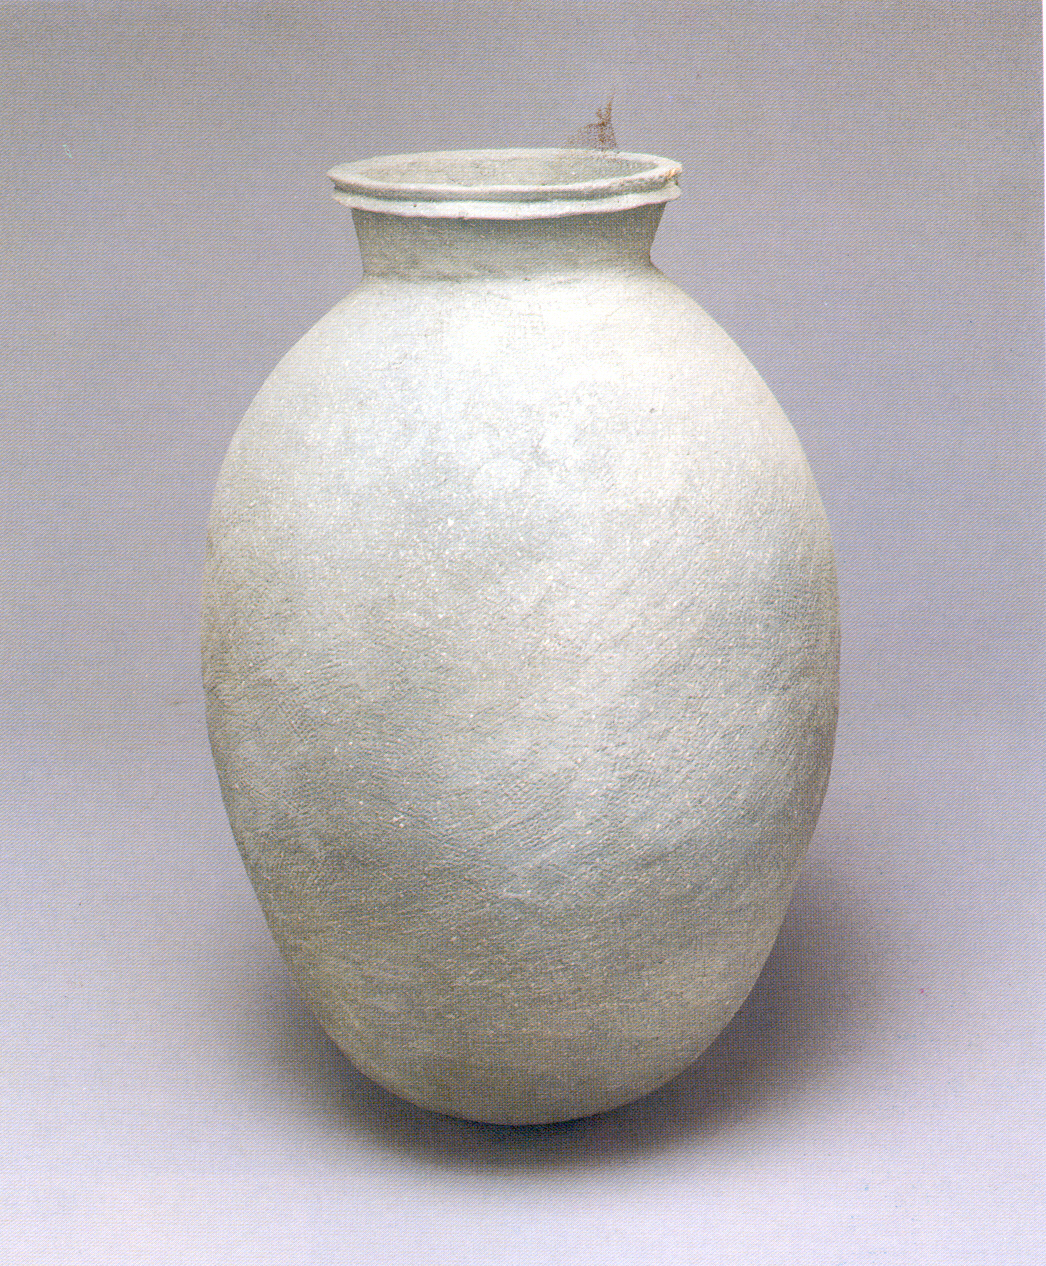 계란모양큰항아리(Jar shaped with egg) 의 이미지